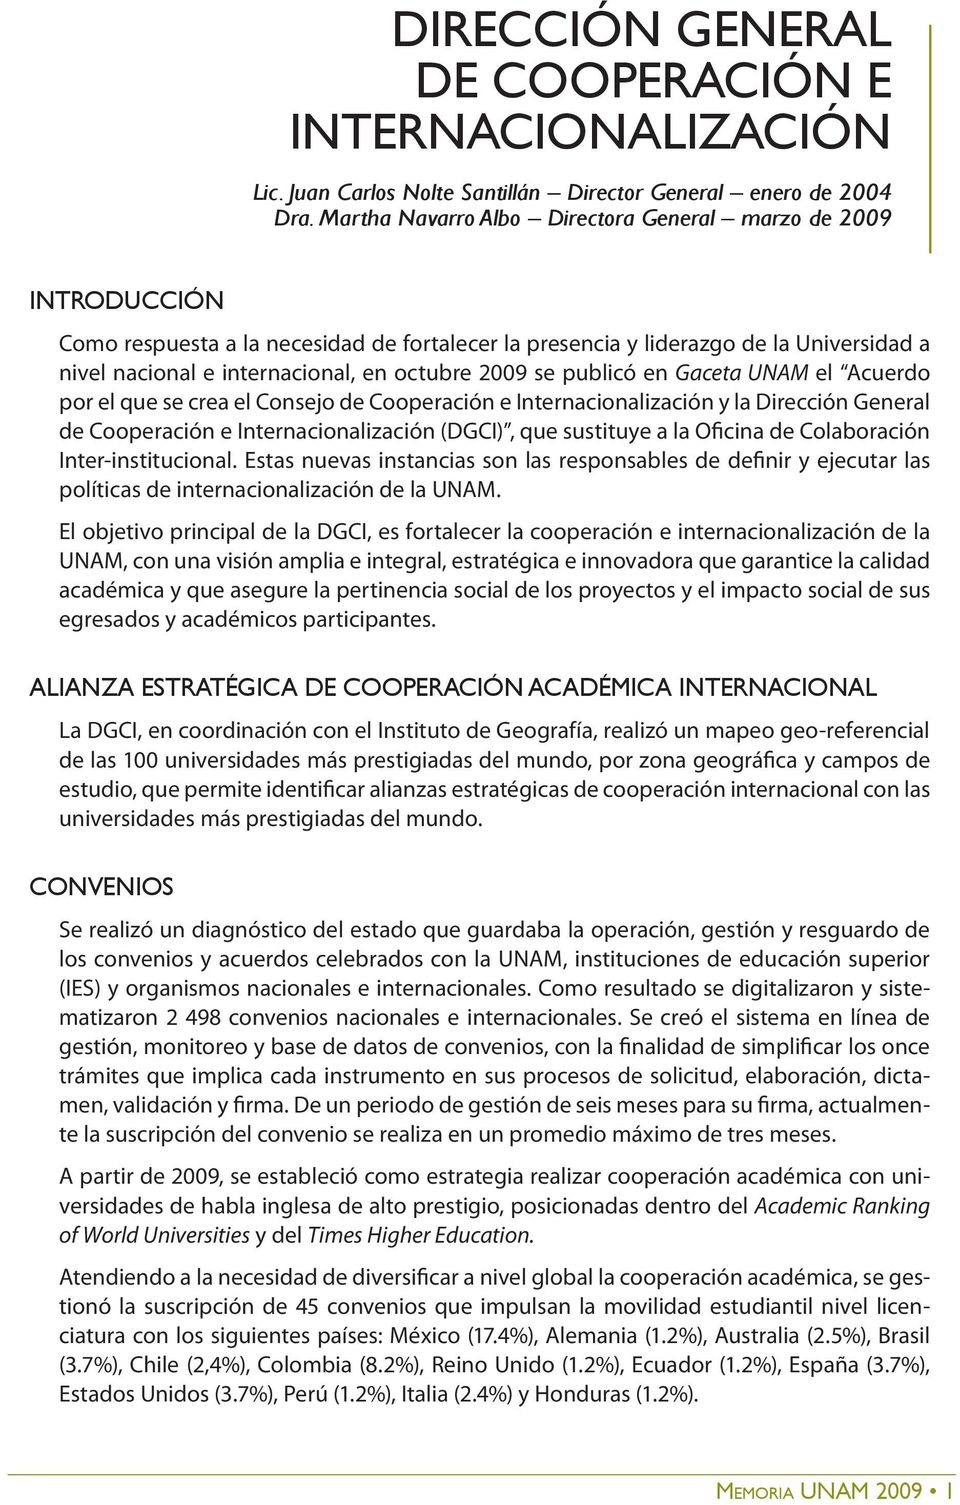 2009 se publicó en Gaceta UNAM el Acuerdo por el que se crea el Consejo de Cooperación e Internacionalización y la Dirección General de Cooperación e Internacionalización (DGCI), que sustituye a la